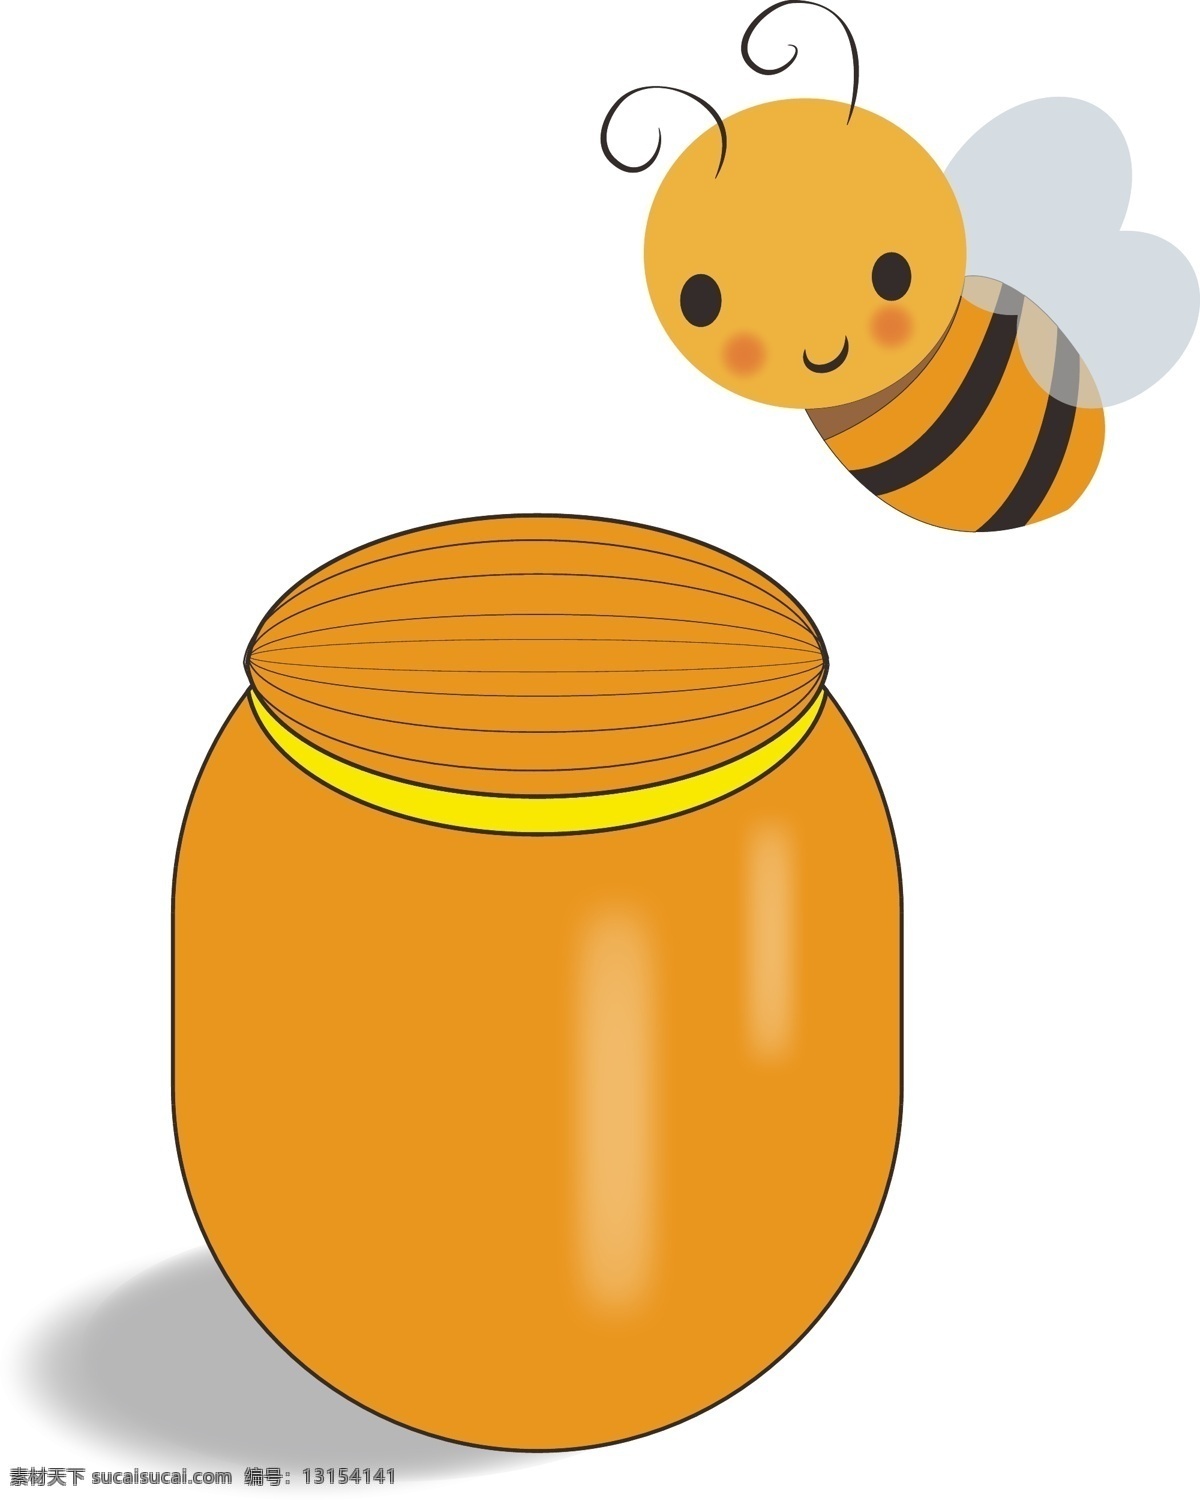 小 蜜蜂 蜂蜜 罐 小蜜蜂 蜂蜜罐 采蜂蜜 卡通蜜蜂 动漫动画 风景漫画